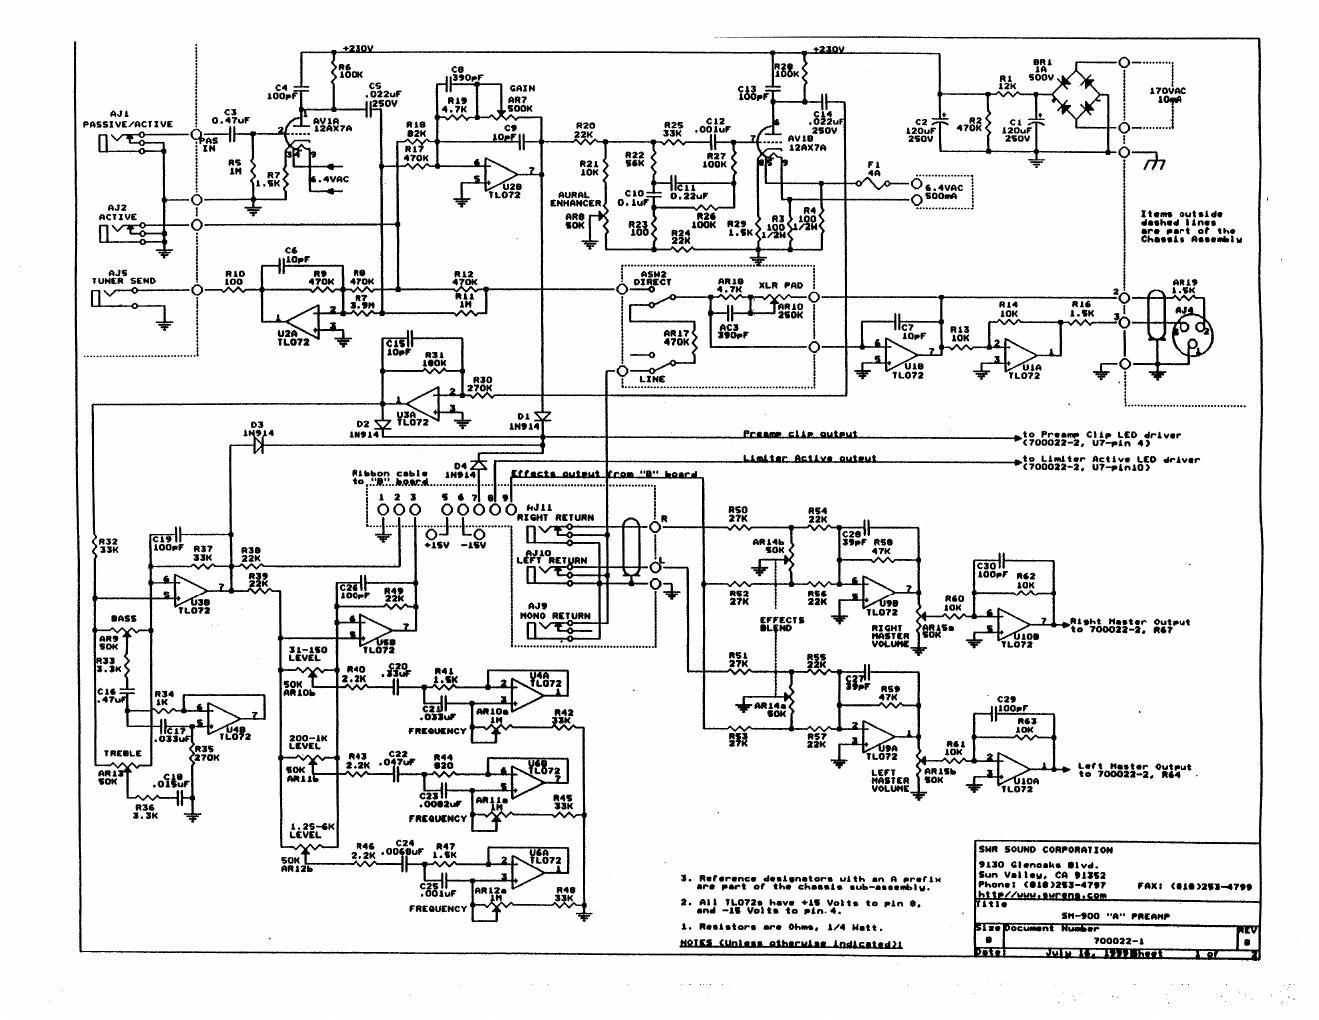 swr SM900 Preamp schematic